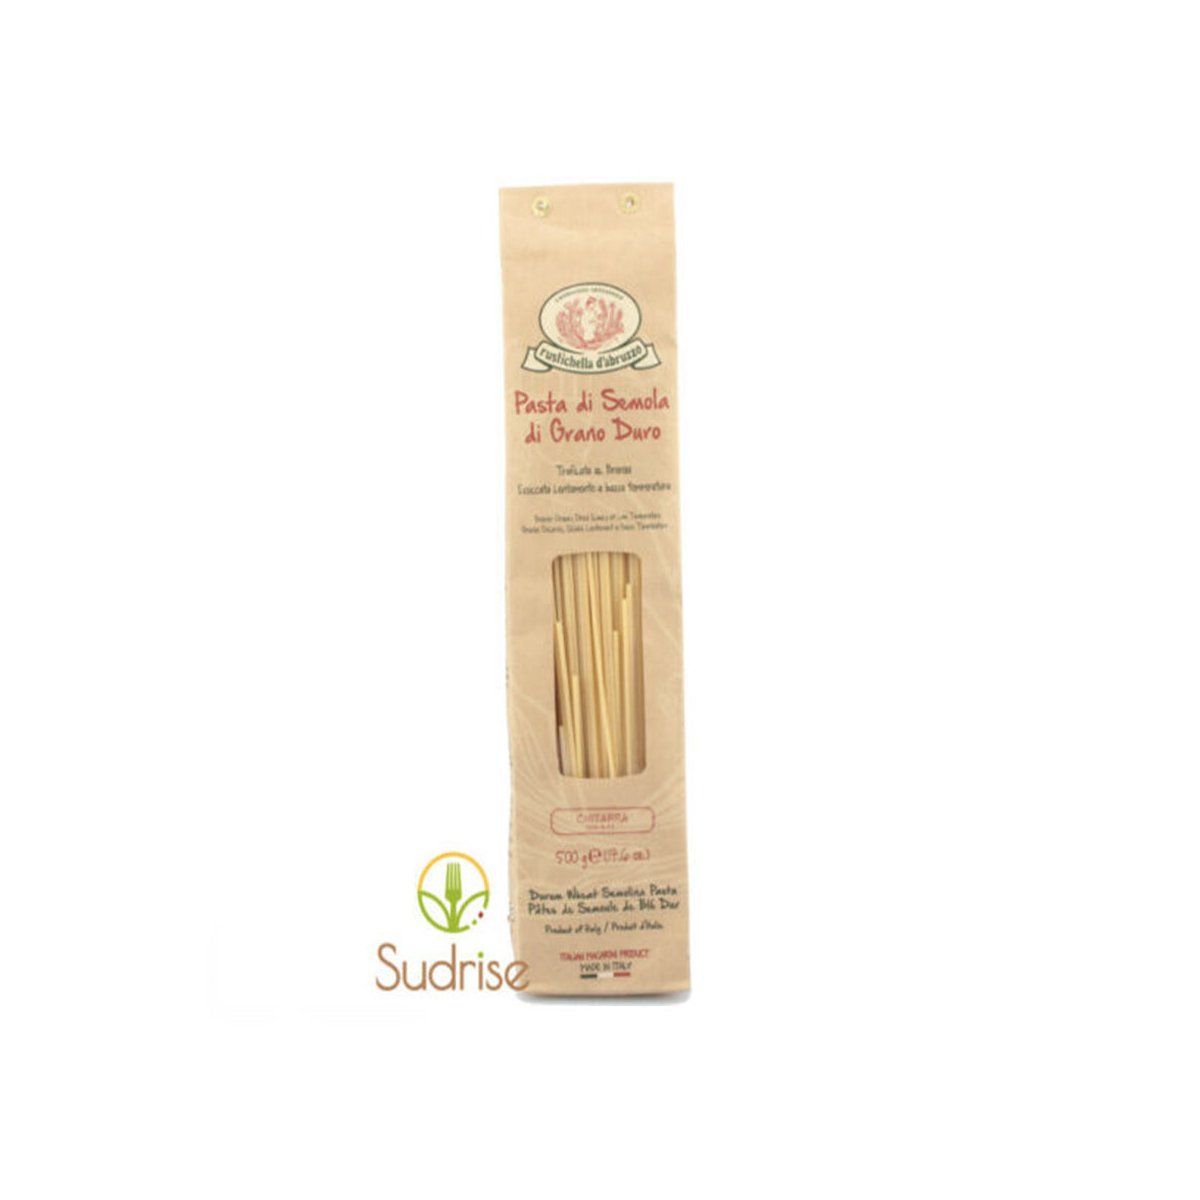 Spaghetti Chitarra 500g Rustichella d'Abruzzo Pasta Artigianale Superiore